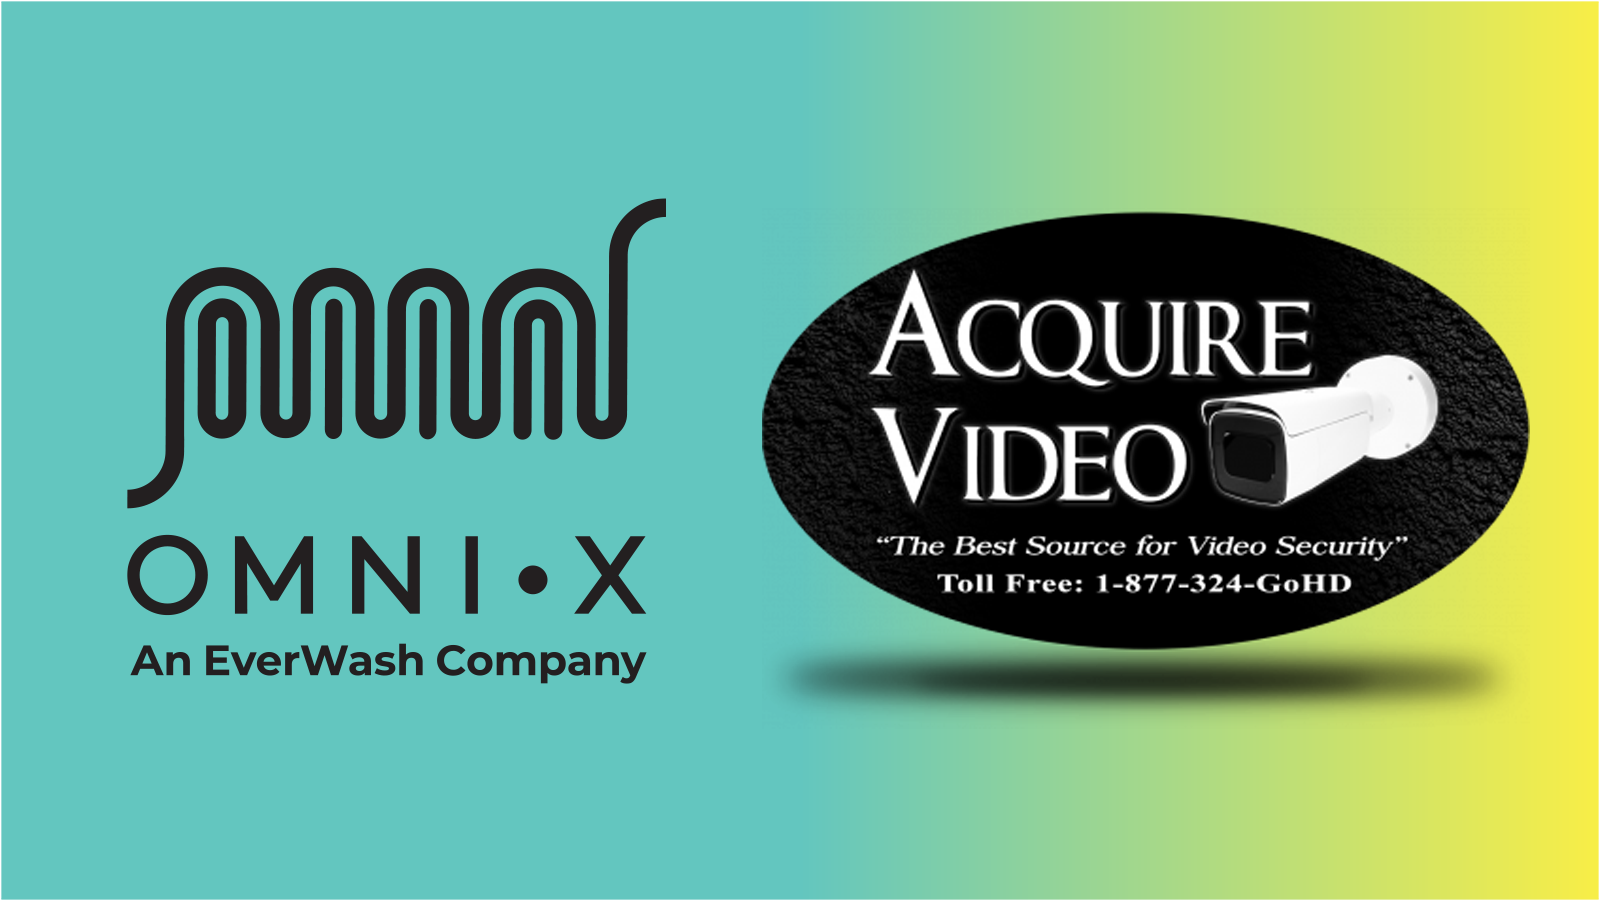 omniX and Acquire Video